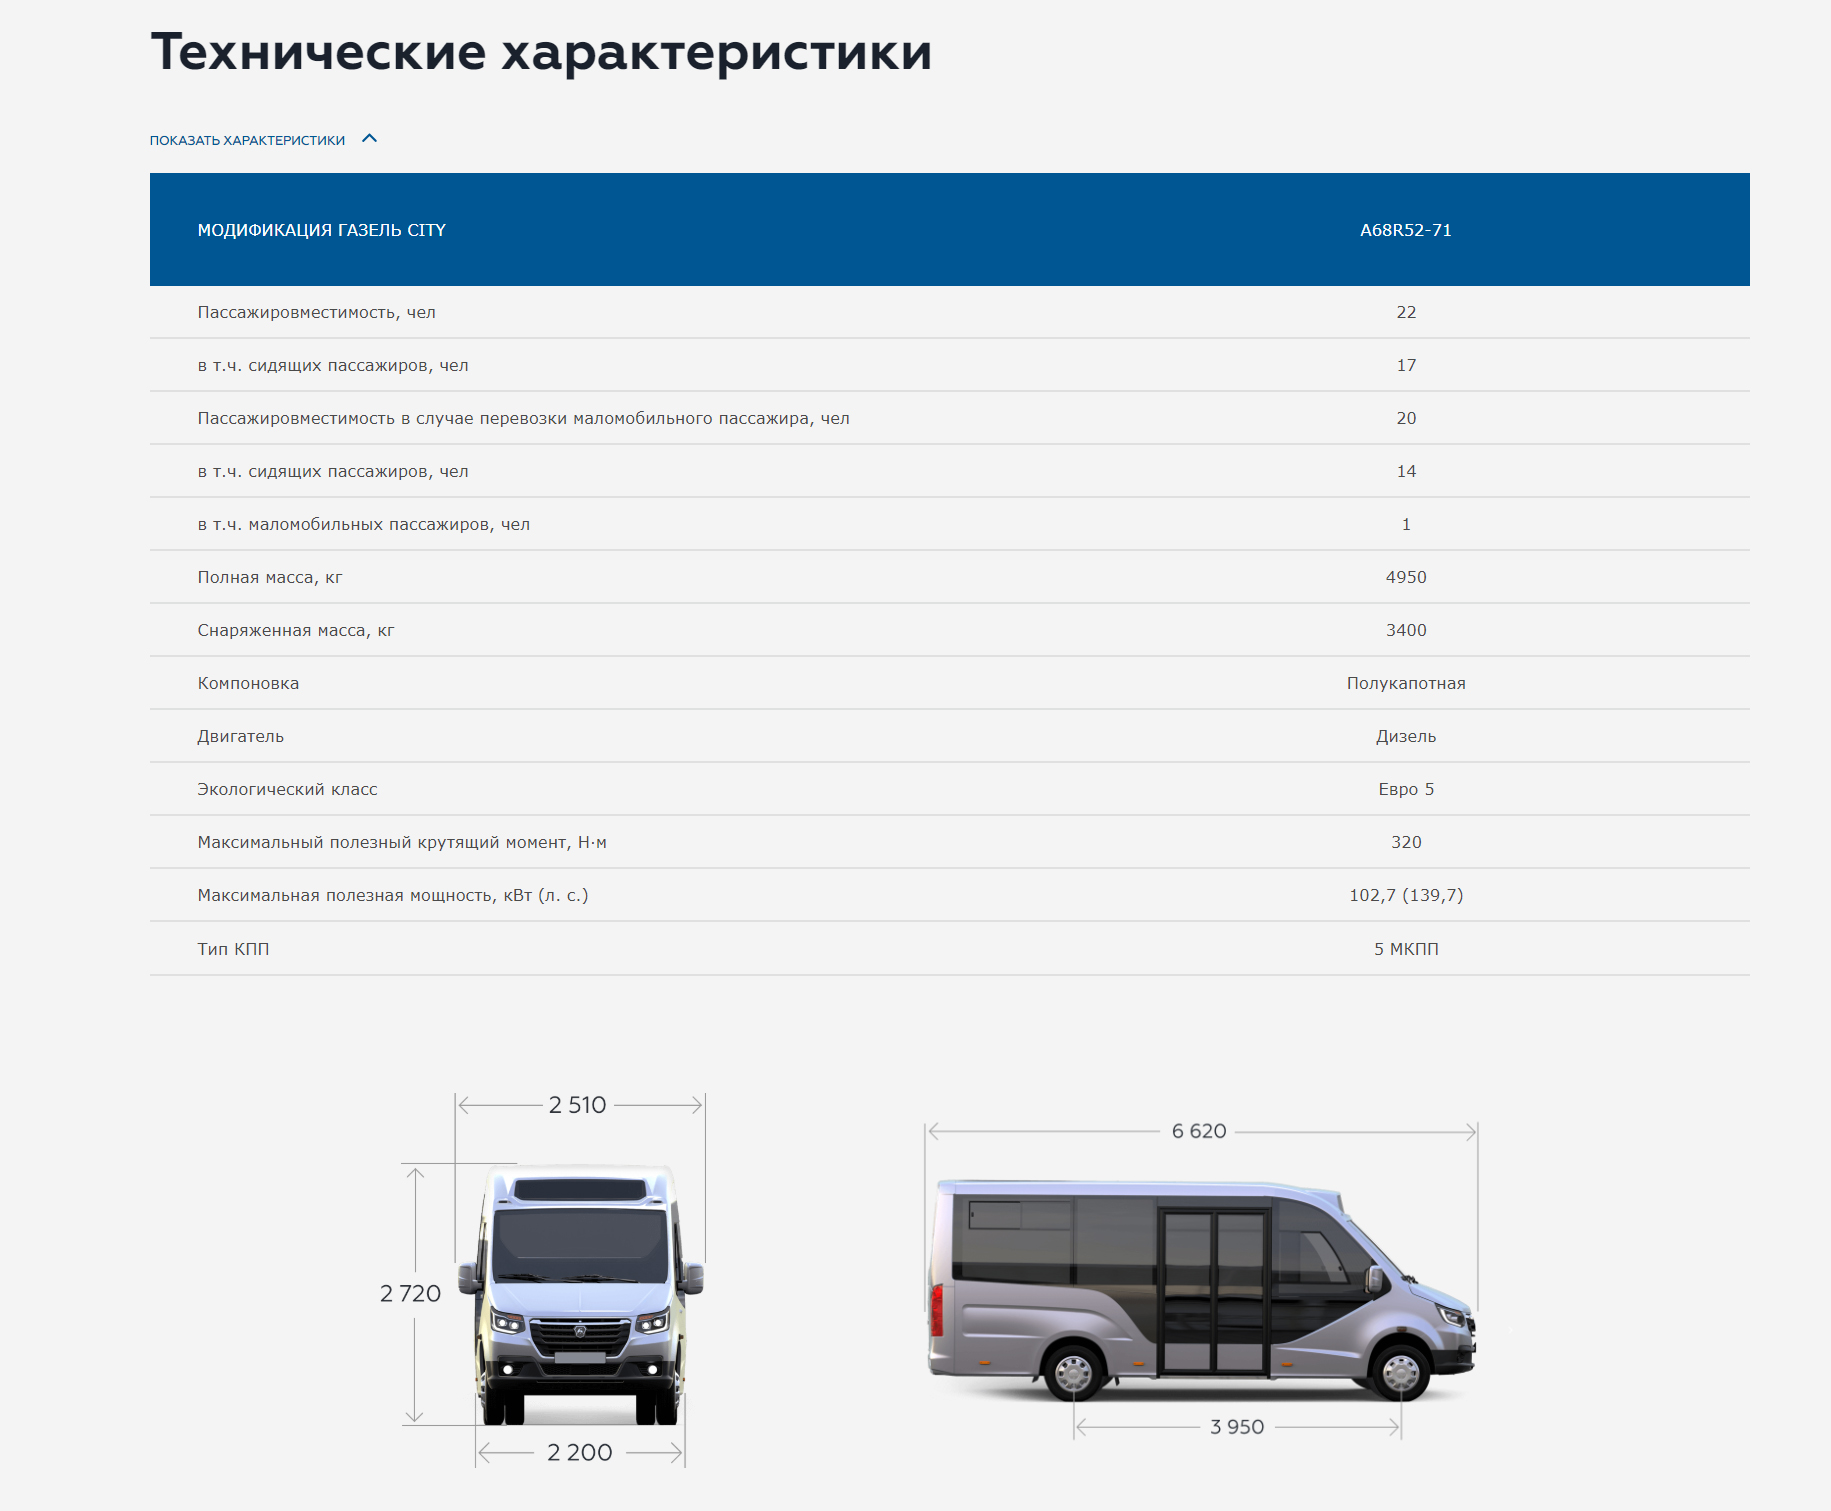 ГАЗель CITY - новый низкопольный автобус